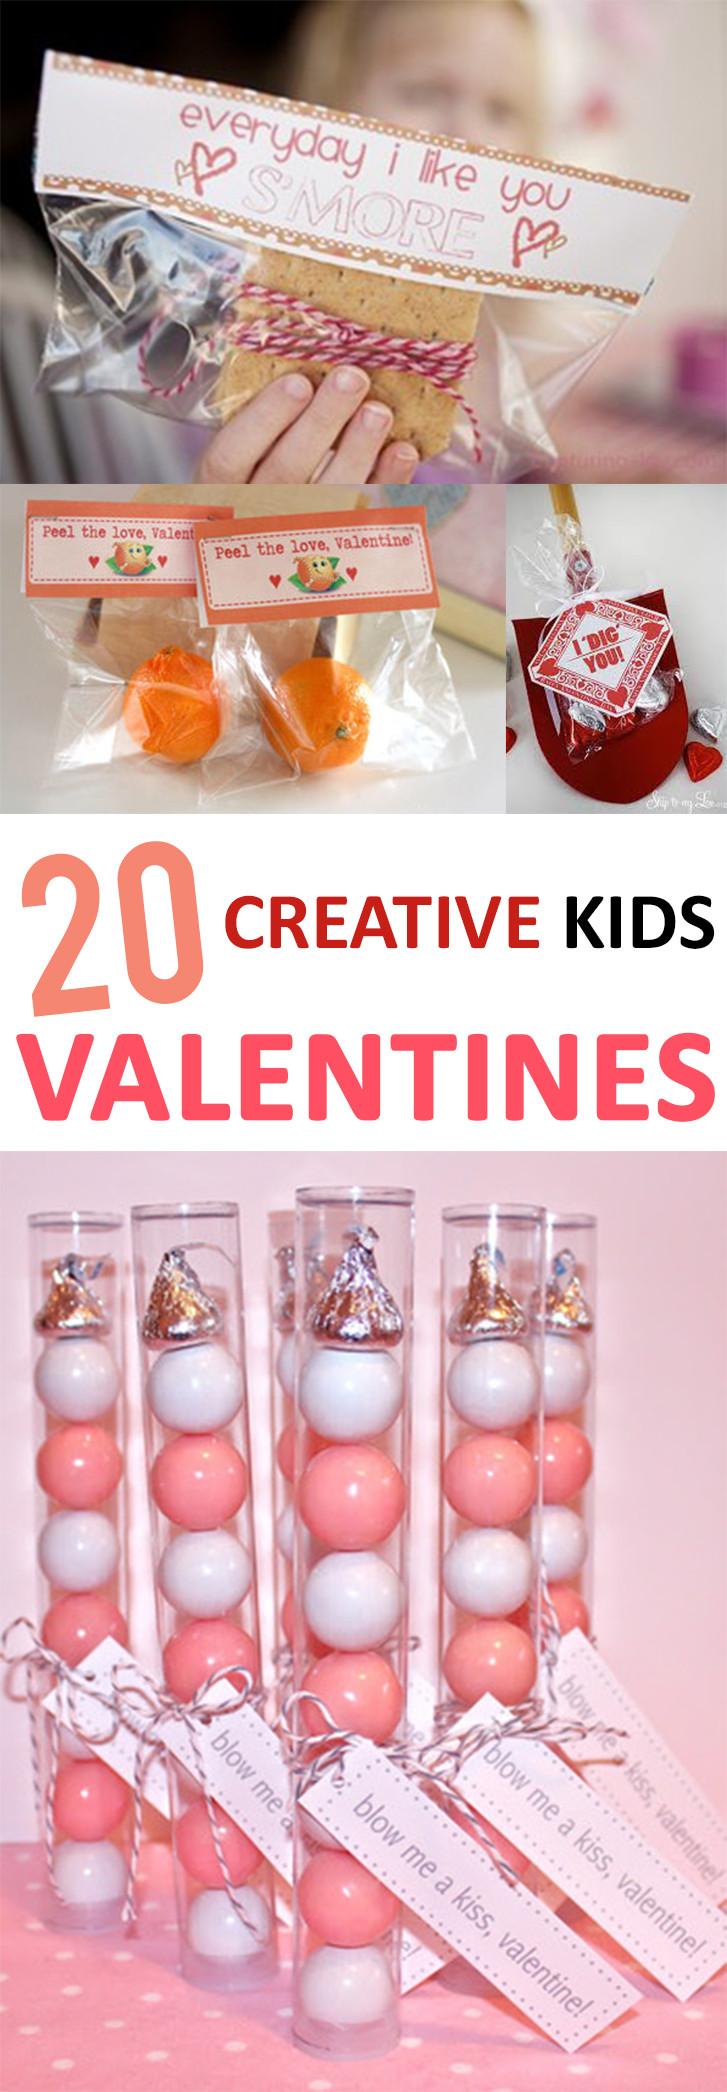 Valentines Day Creative Gift Ideas
 20 Creative Kid s Valentines